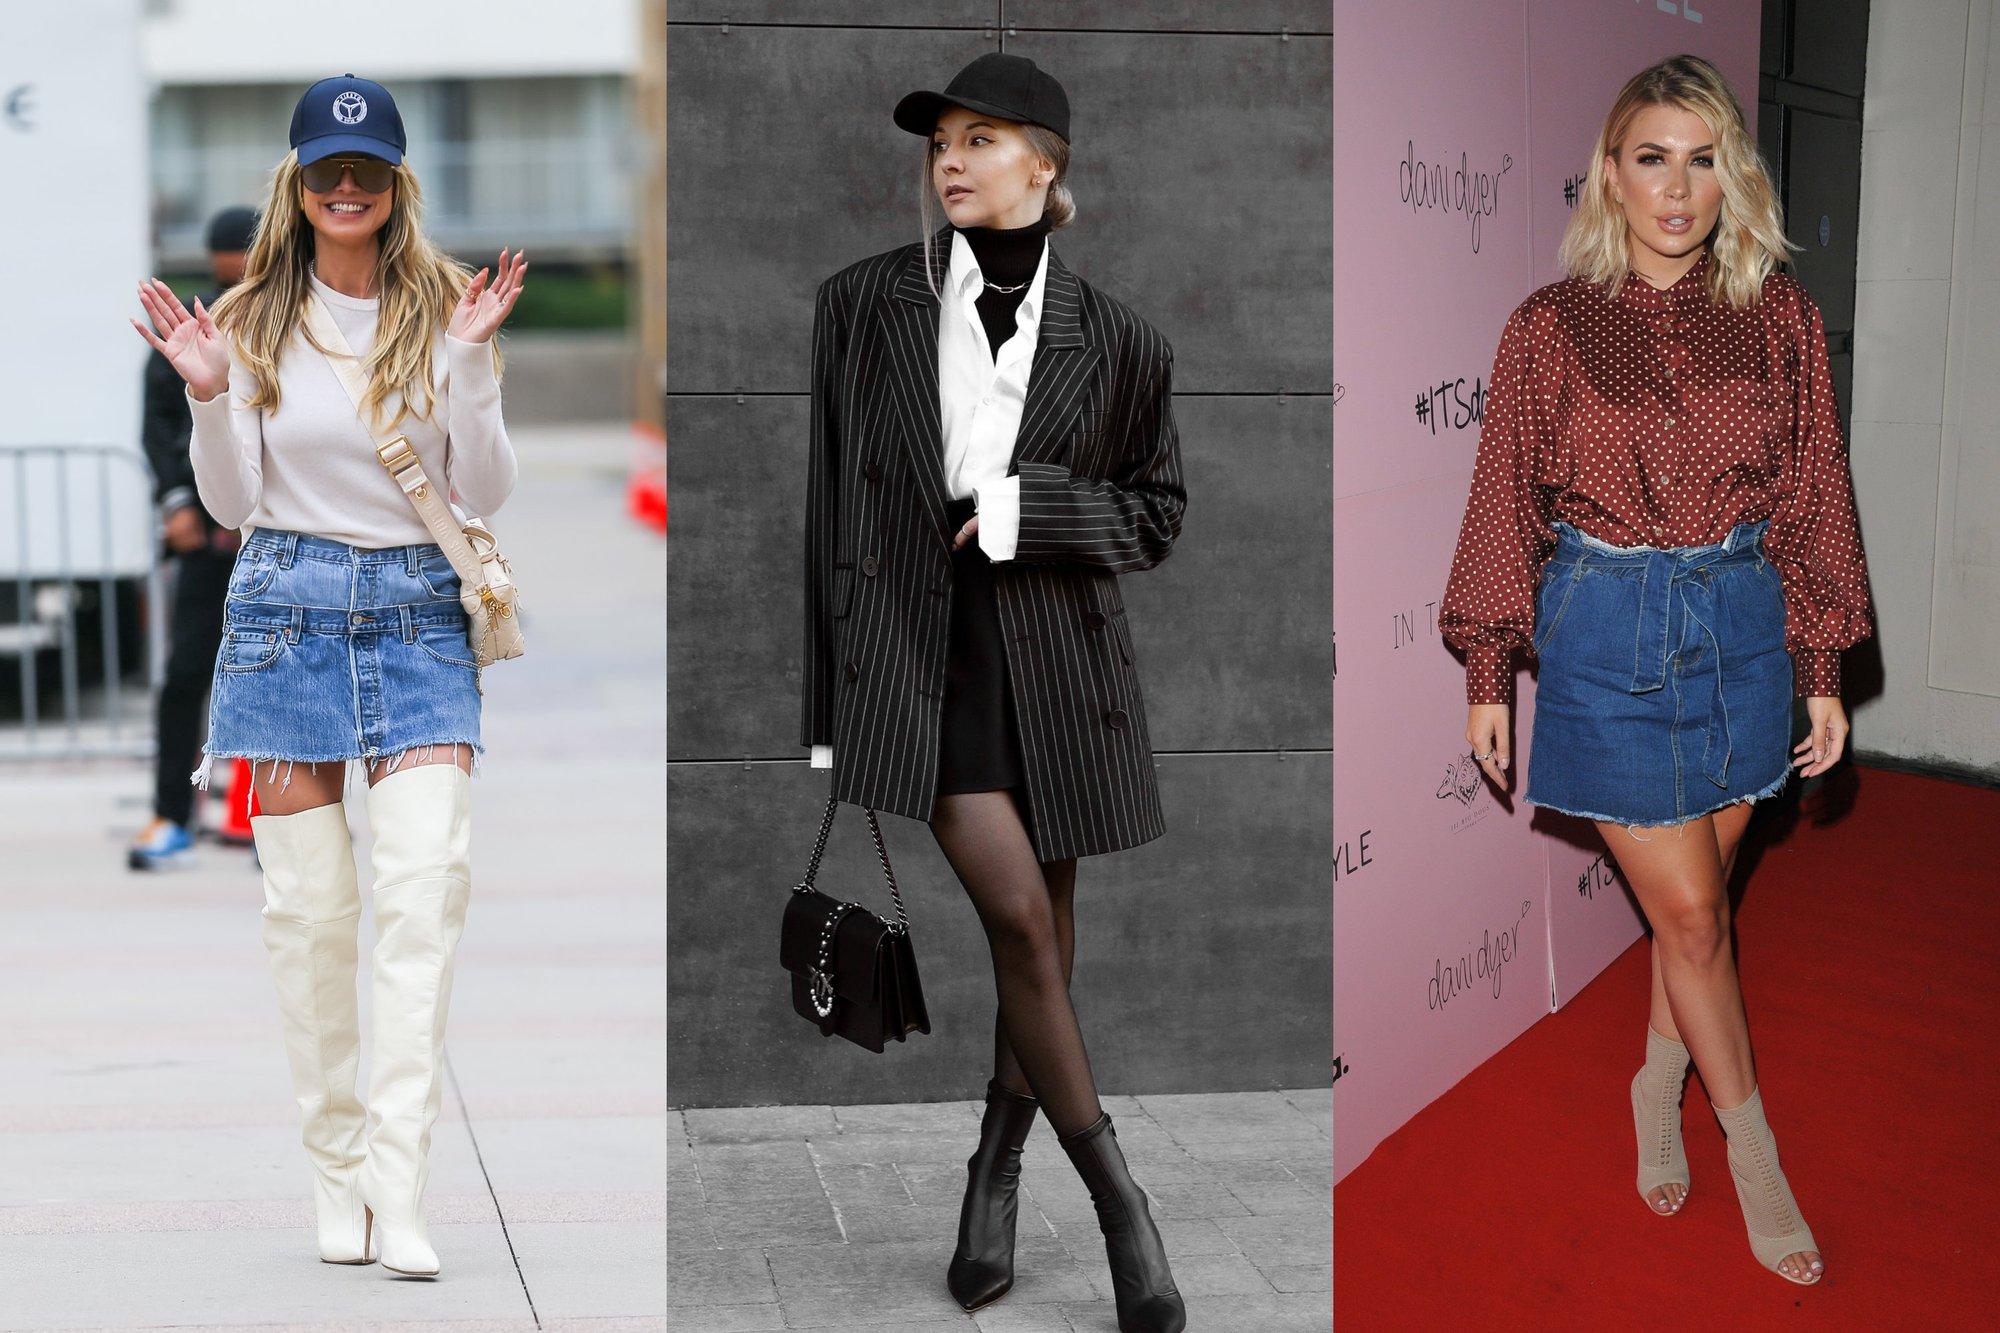 Stilistė griauna mitą, kad mini sijonai – tik jaunoms merginoms: patarė, kaip derinti, kad neatrodytumėte vulgariai